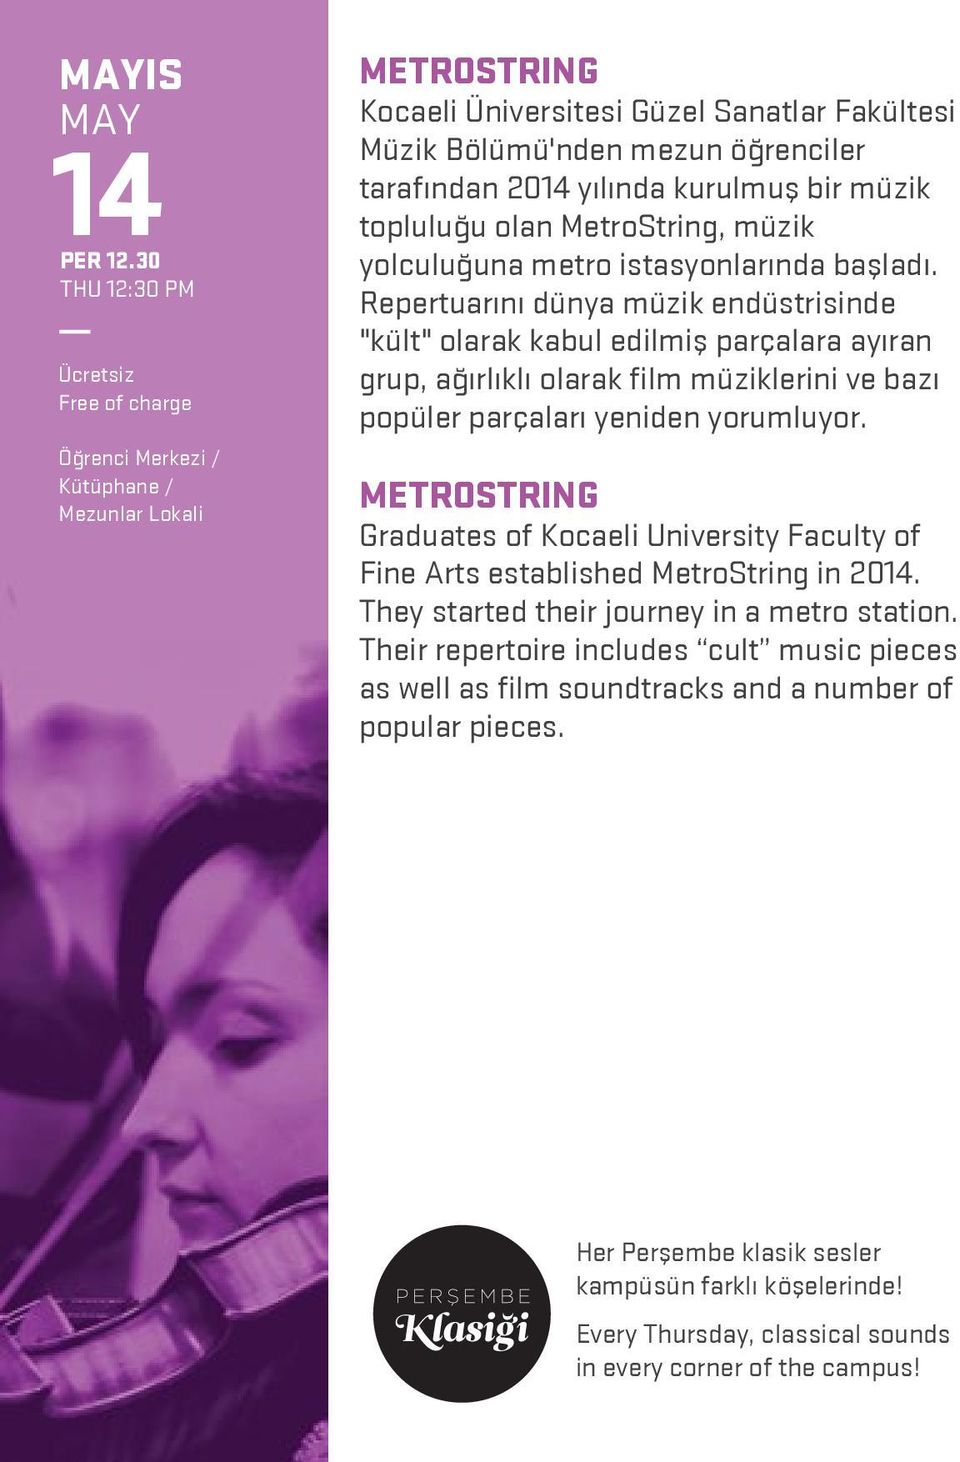 topluluğu olan MetroString, müzik yolculuğuna metro istasyonlarında başladı.